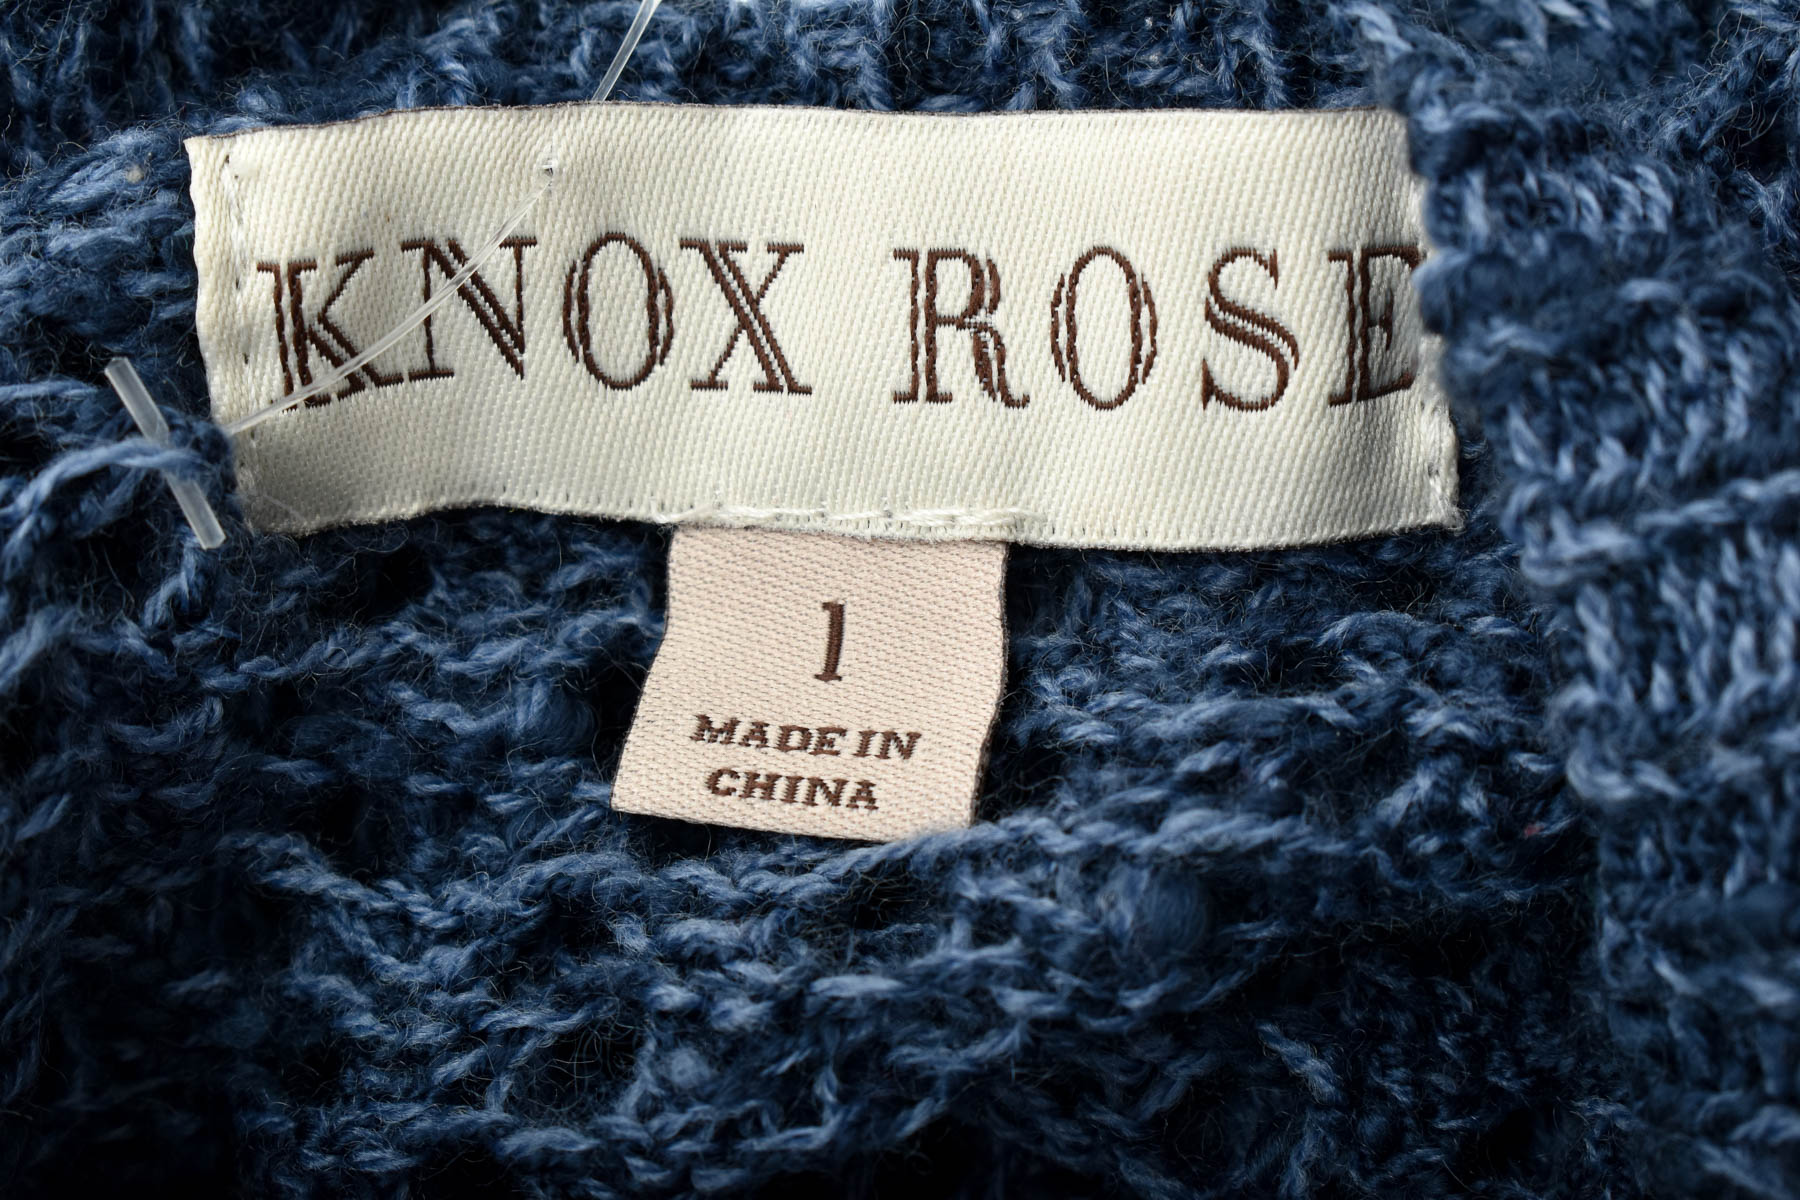 Pulover de damă - KNOX ROSE - 2